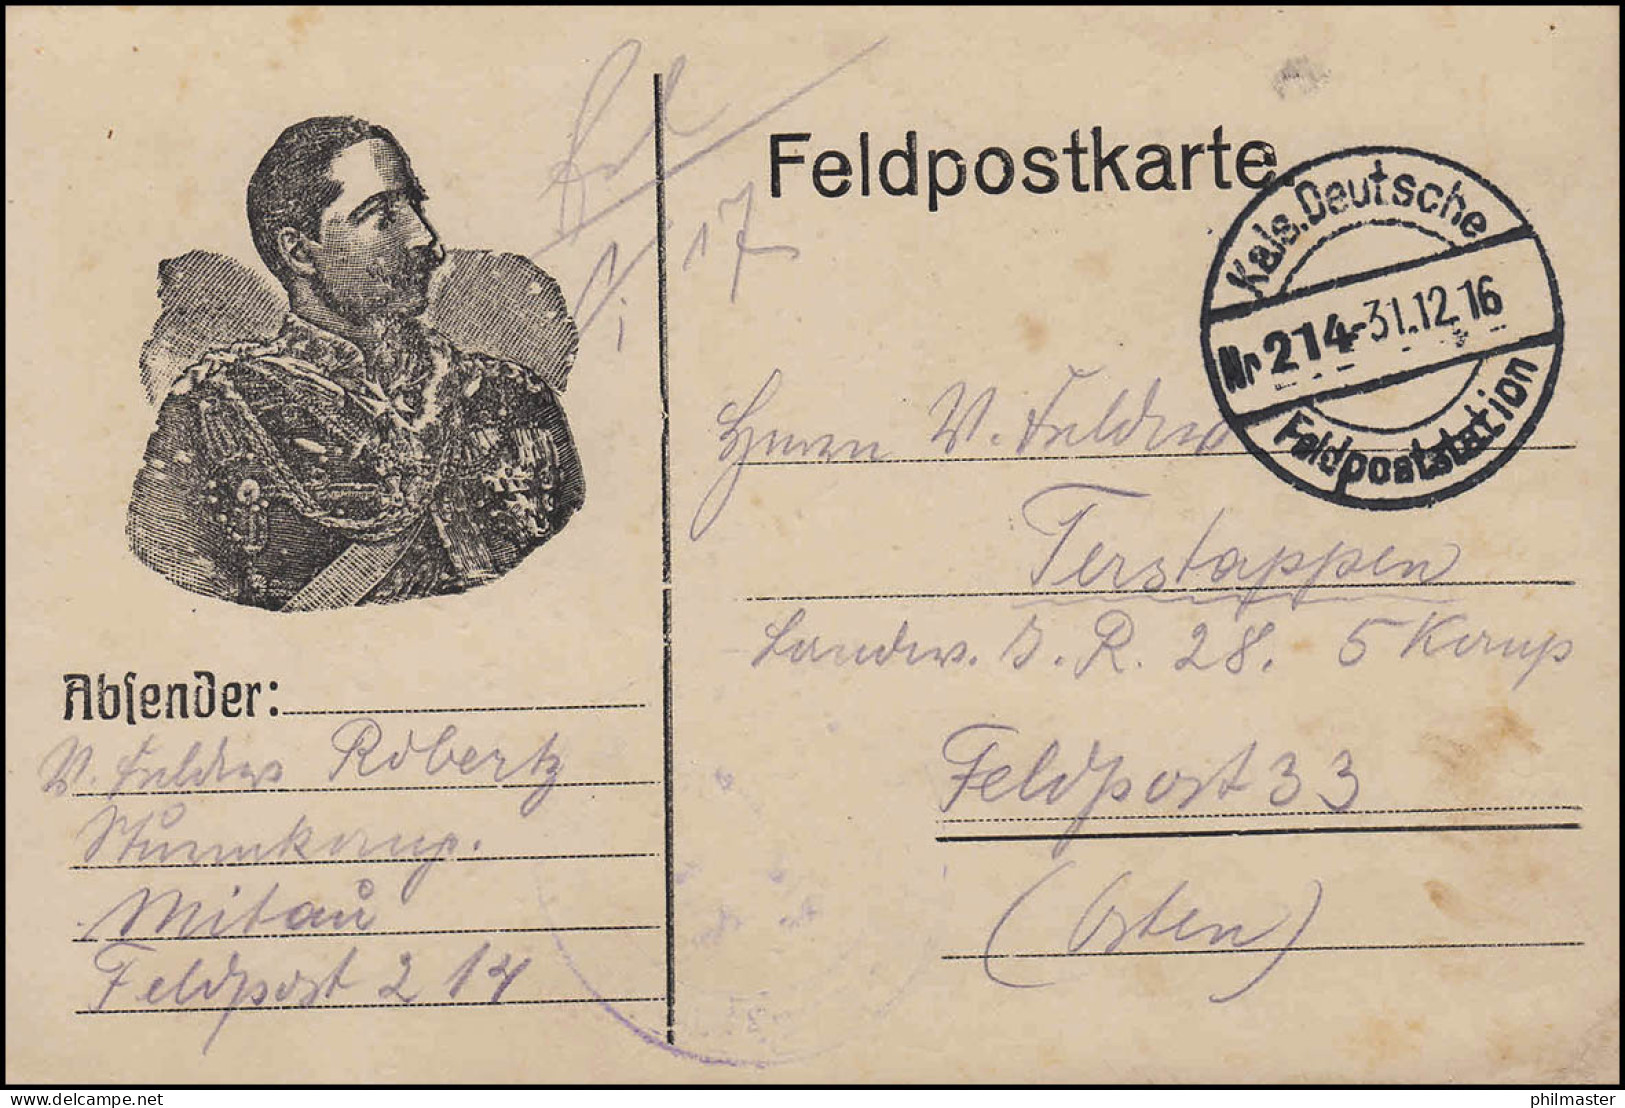 Feldpostkarte Wilhelm-Portrait Kais. Deutsche Feldpoststation 214 - 31.12.16 - Bezetting 1914-18